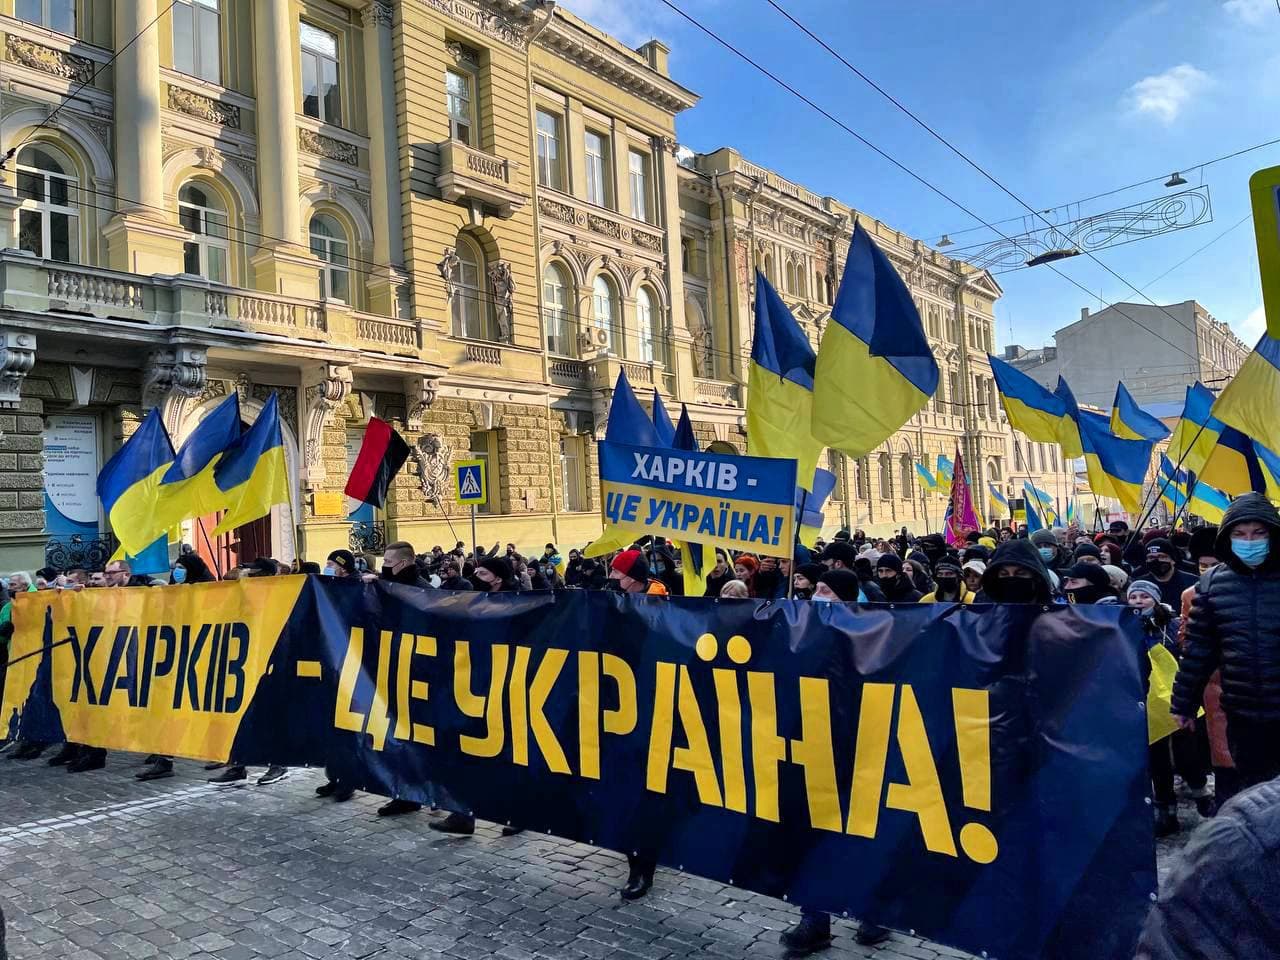 "Марш единства" в Харькове: экспертное мнение политолога о ситуации в регионе